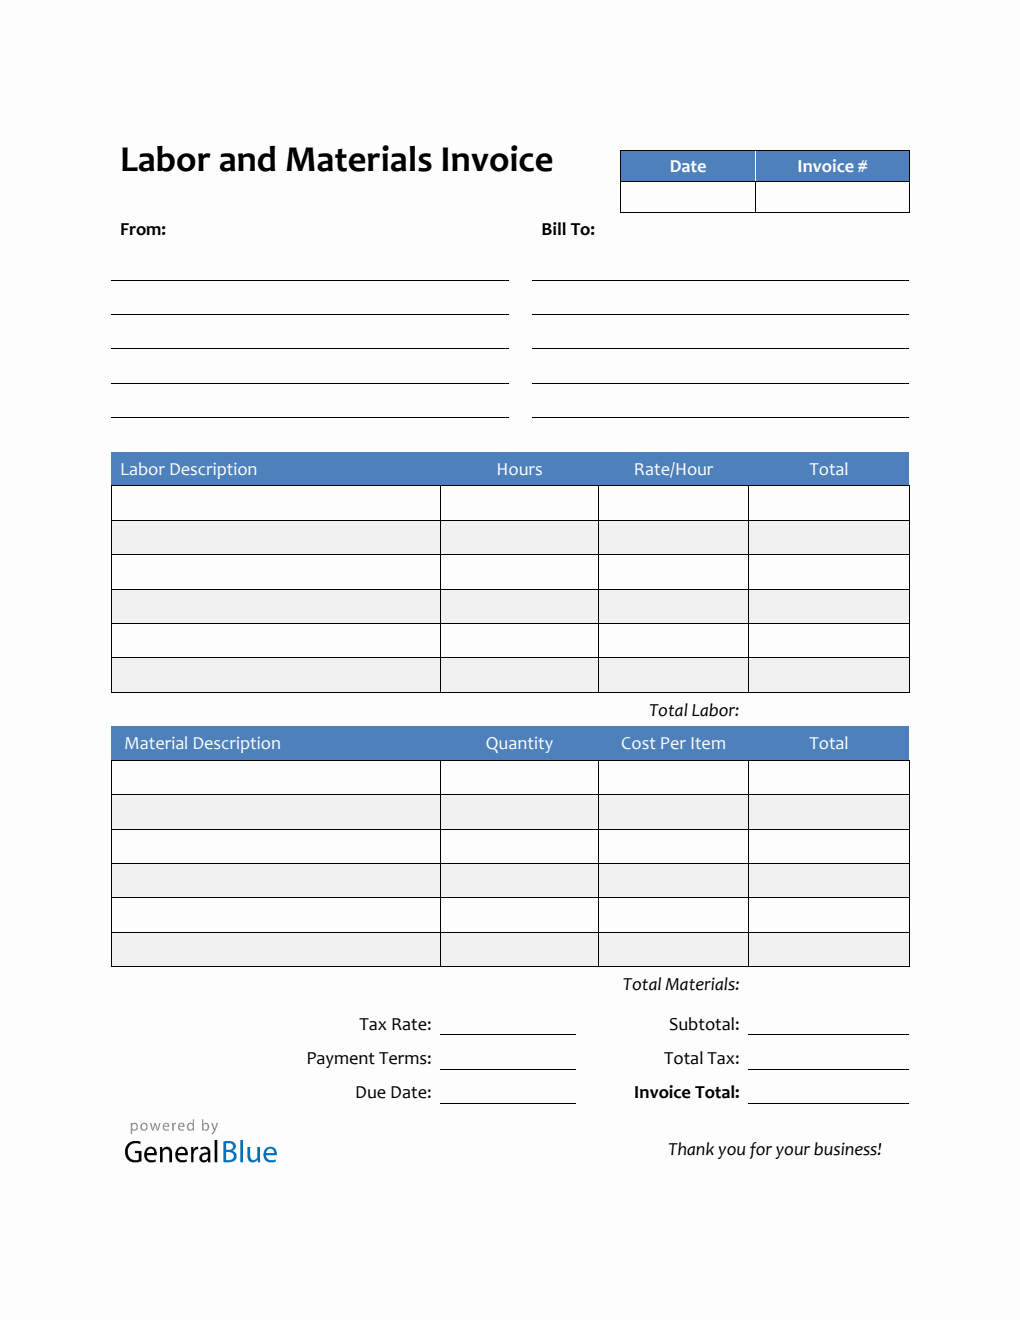 Labor and Materials Invoice in PDF (Striped)